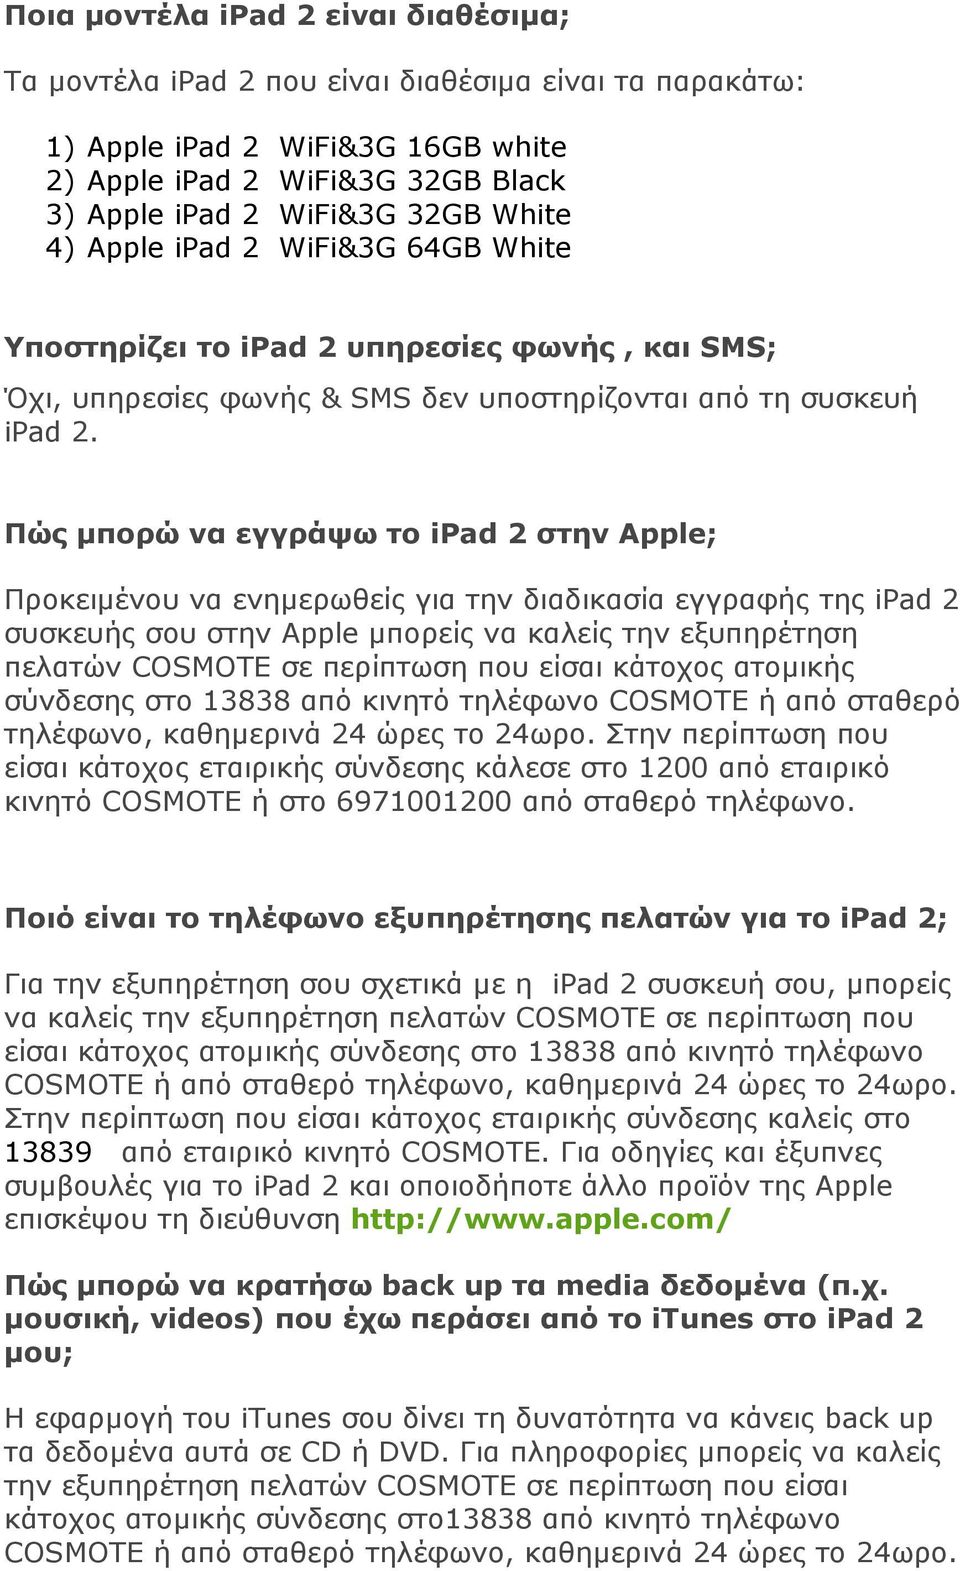 Πώς µπορώ να εγγράψω το ipad 2 στην Apple; Προκειµένου να ενηµερωθείς για την διαδικασία εγγραφής της ipad 2 συσκευής σου στην Apple µπορείς να καλείς την εξυπηρέτηση πελατών COSMOTE σε περίπτωση που